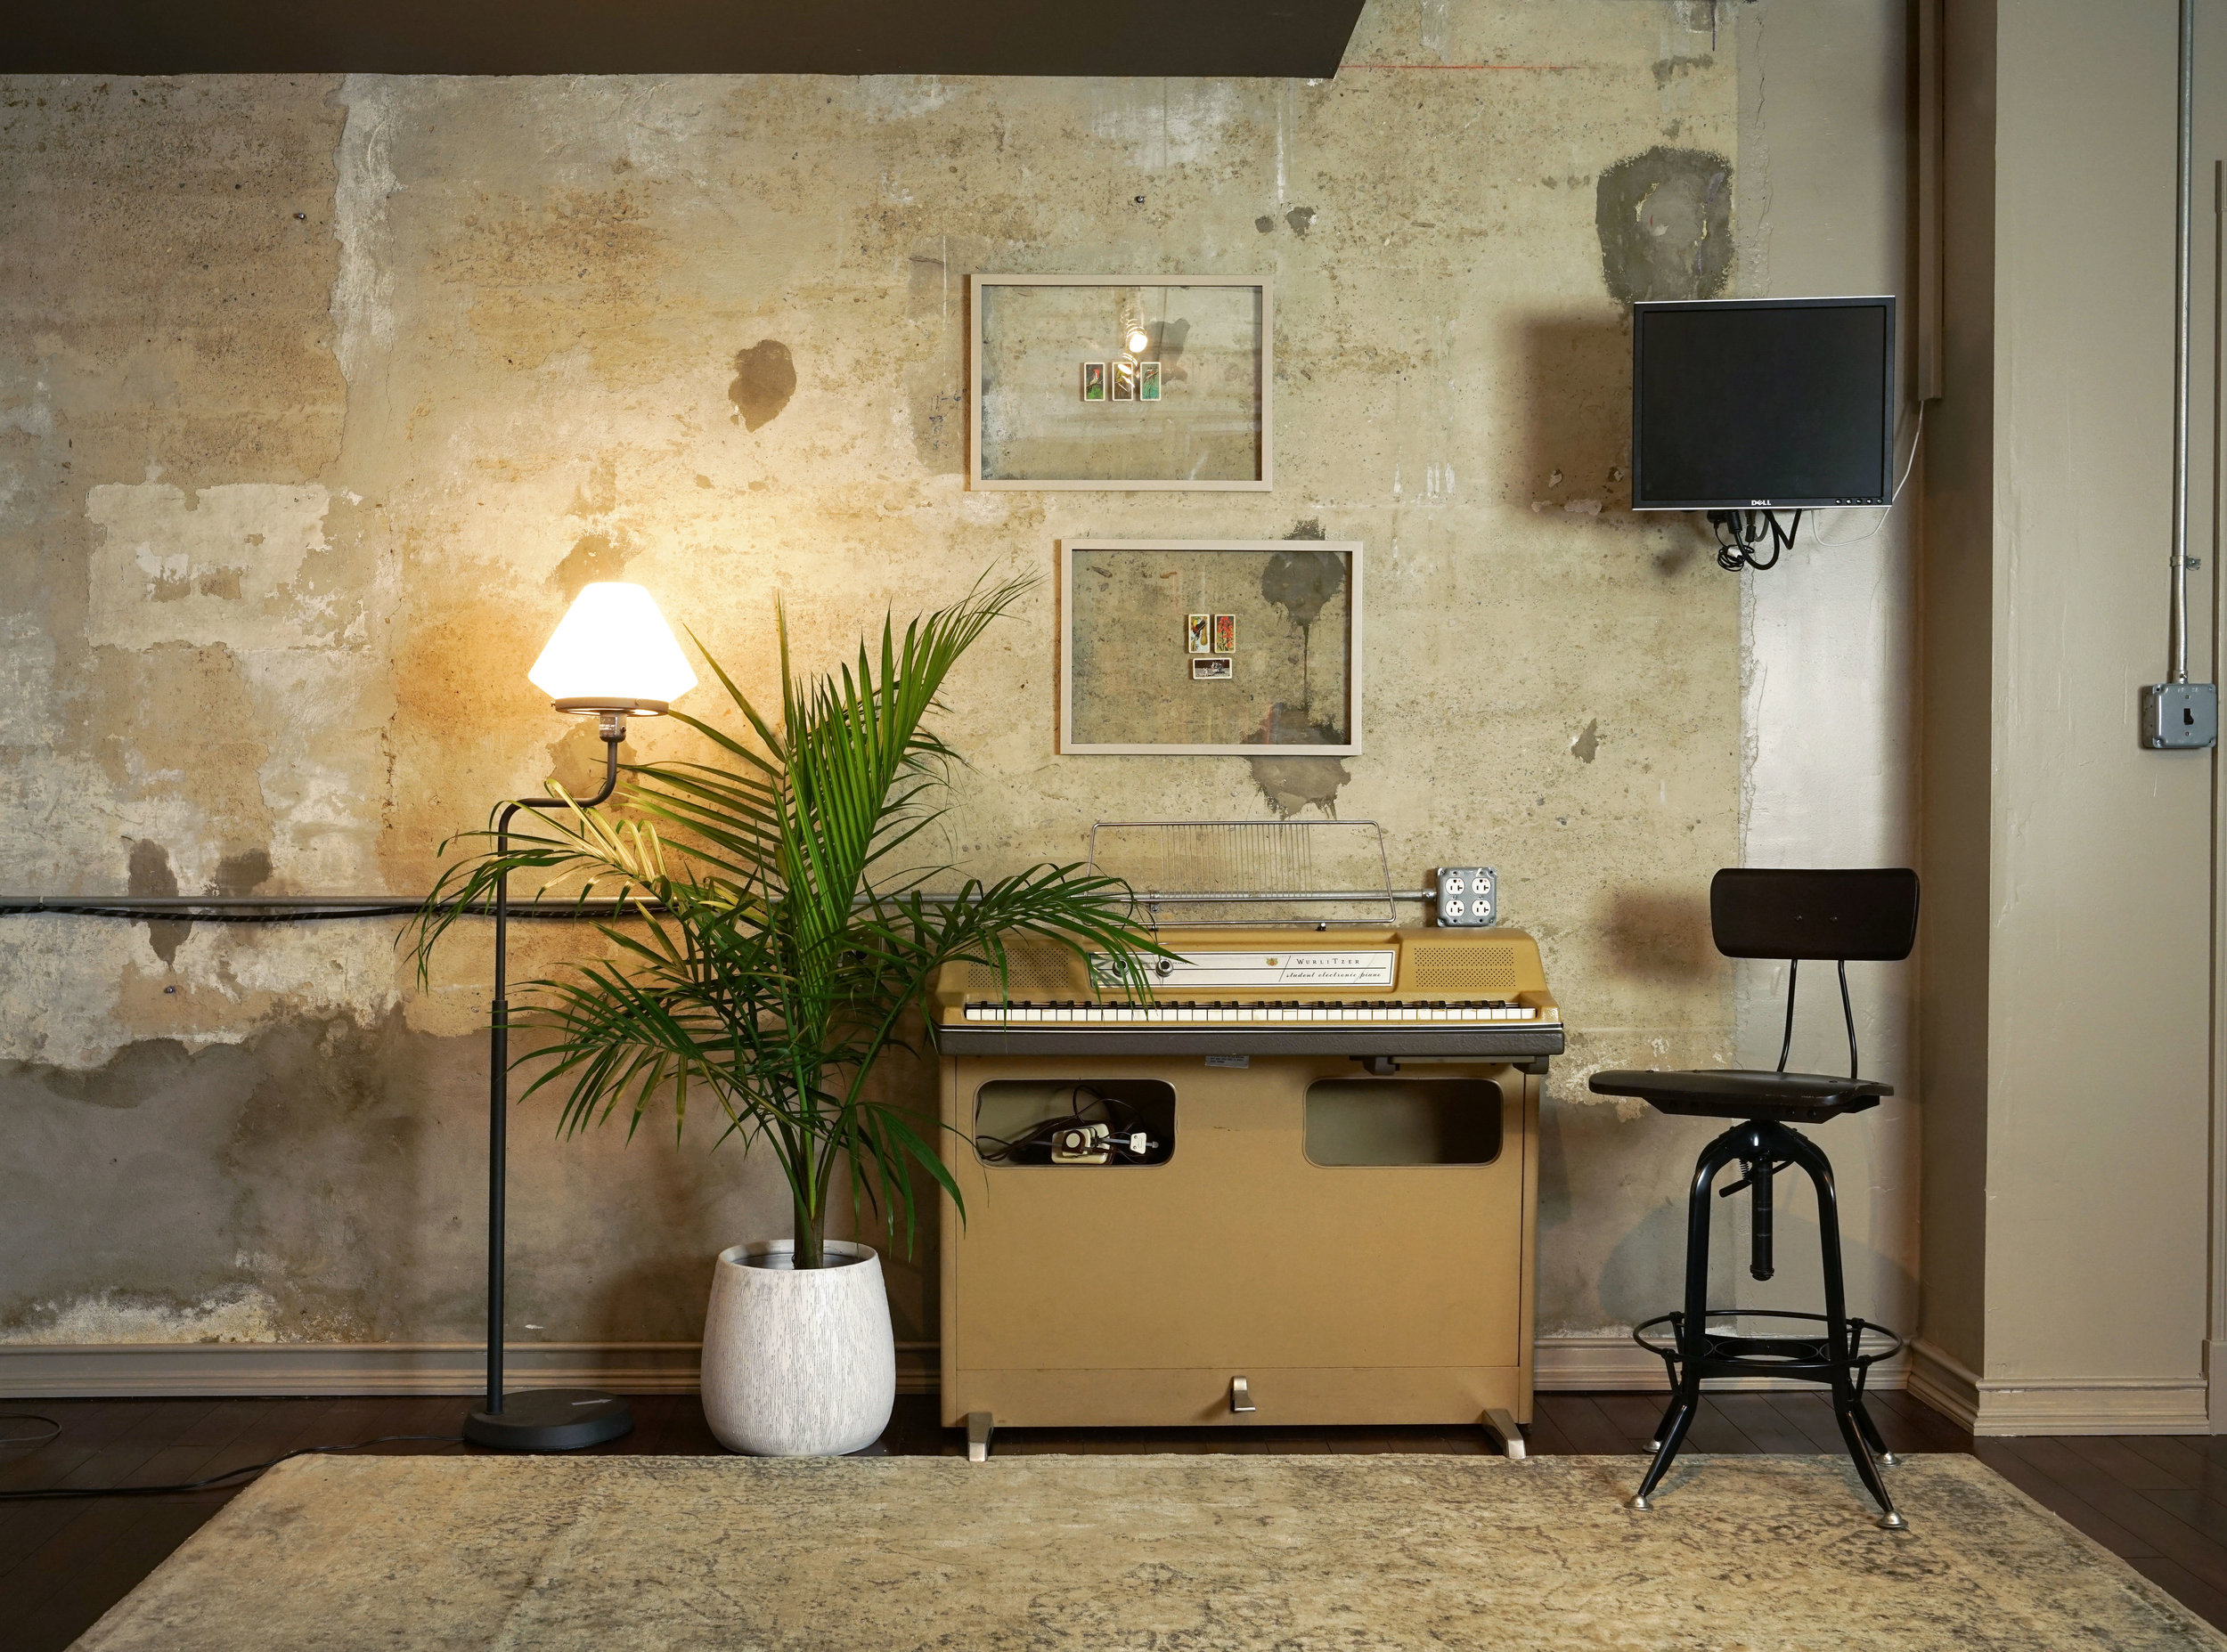 Wurlitzer 206 in a recording studio near a concrete wall